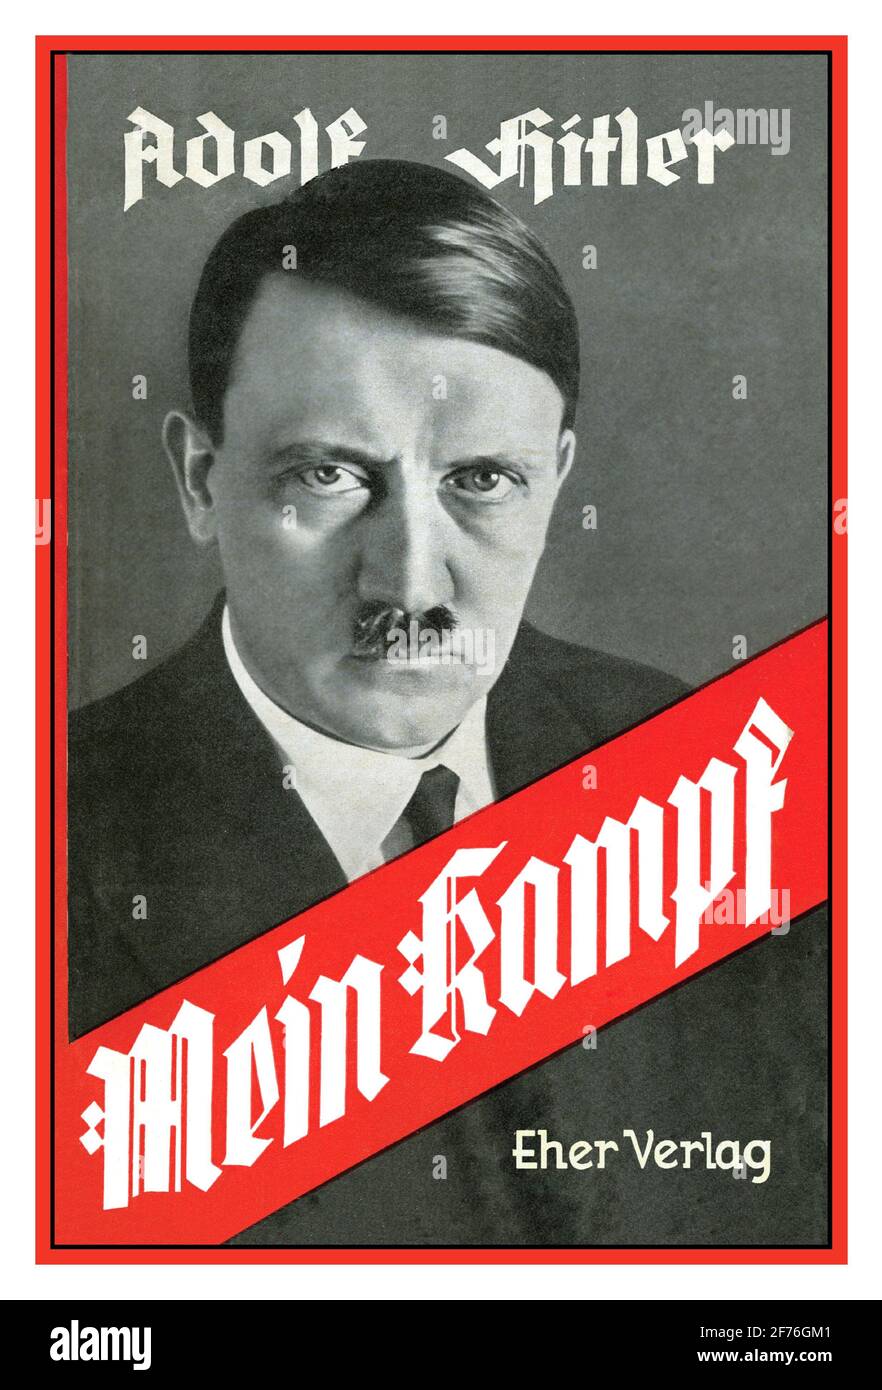 MEIN KAMPF Adolf Hitler livre de couverture Mein Kampf manifeste autobiographique 1925 du chef du Parti nazi Adolf Hitler. Le travail décrit le processus par lequel Hitler est devenu antisémite et décrit son idéologie politique et ses projets futurs pour l'Allemagne. Le volume 1 de Mein Kampf a été publié en 1925 et le volume 2 en 1926. Banque D'Images